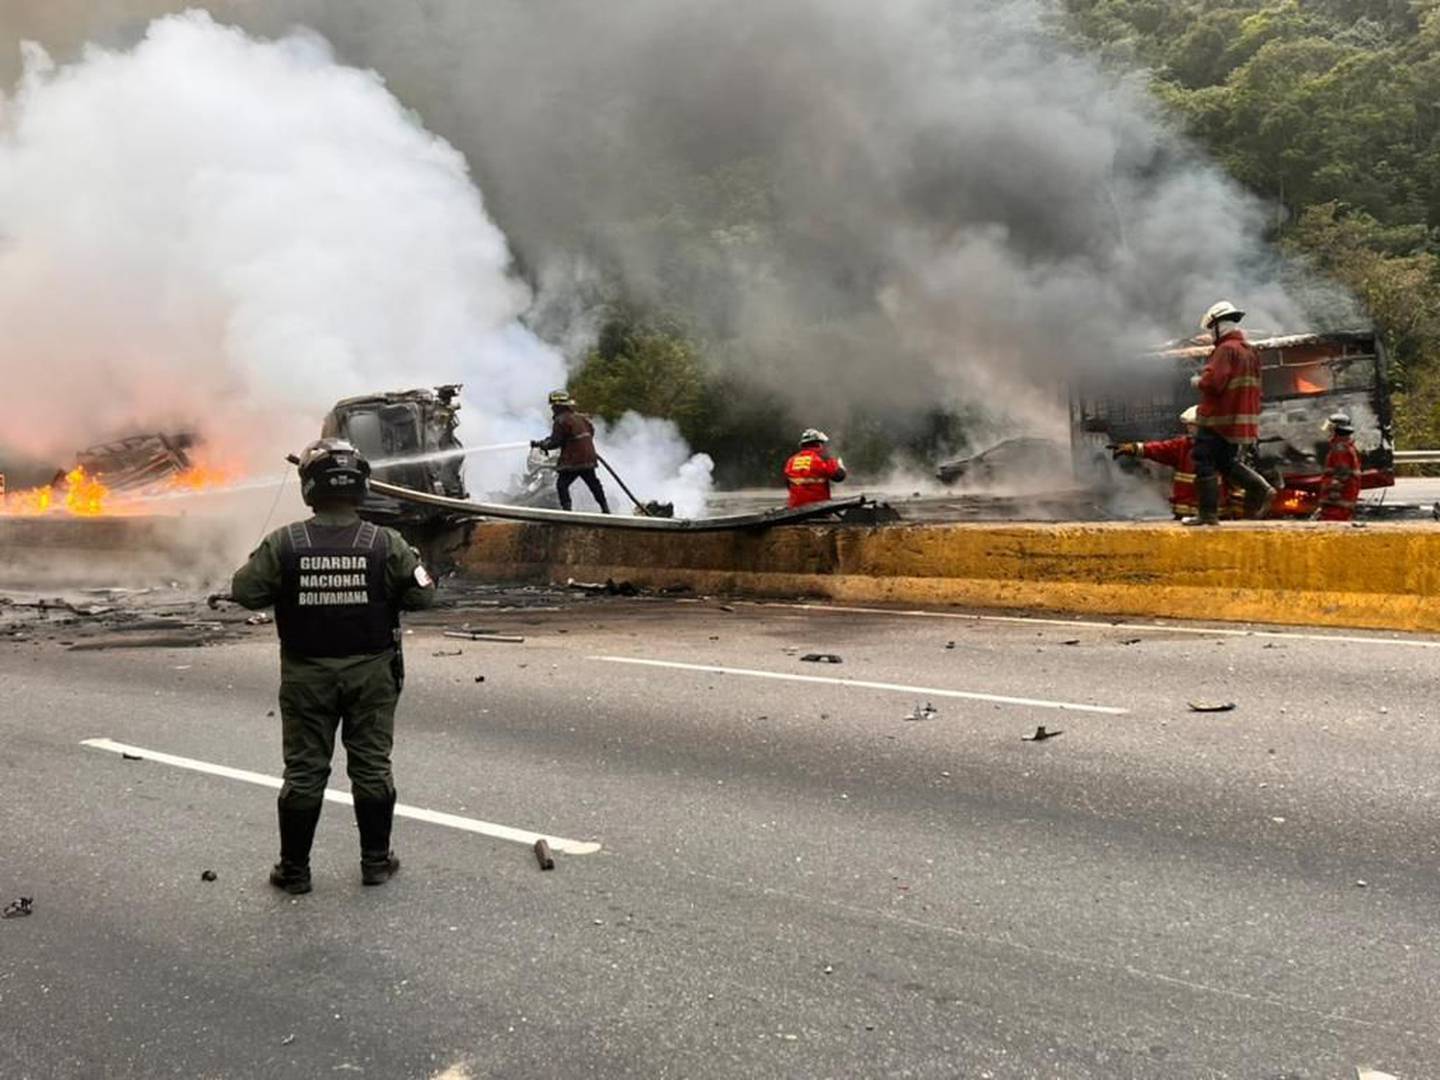 El accidente en Ayacucho, en Venezuela, involucró a 17 vehículos donde casi todos terminaron incendiados.